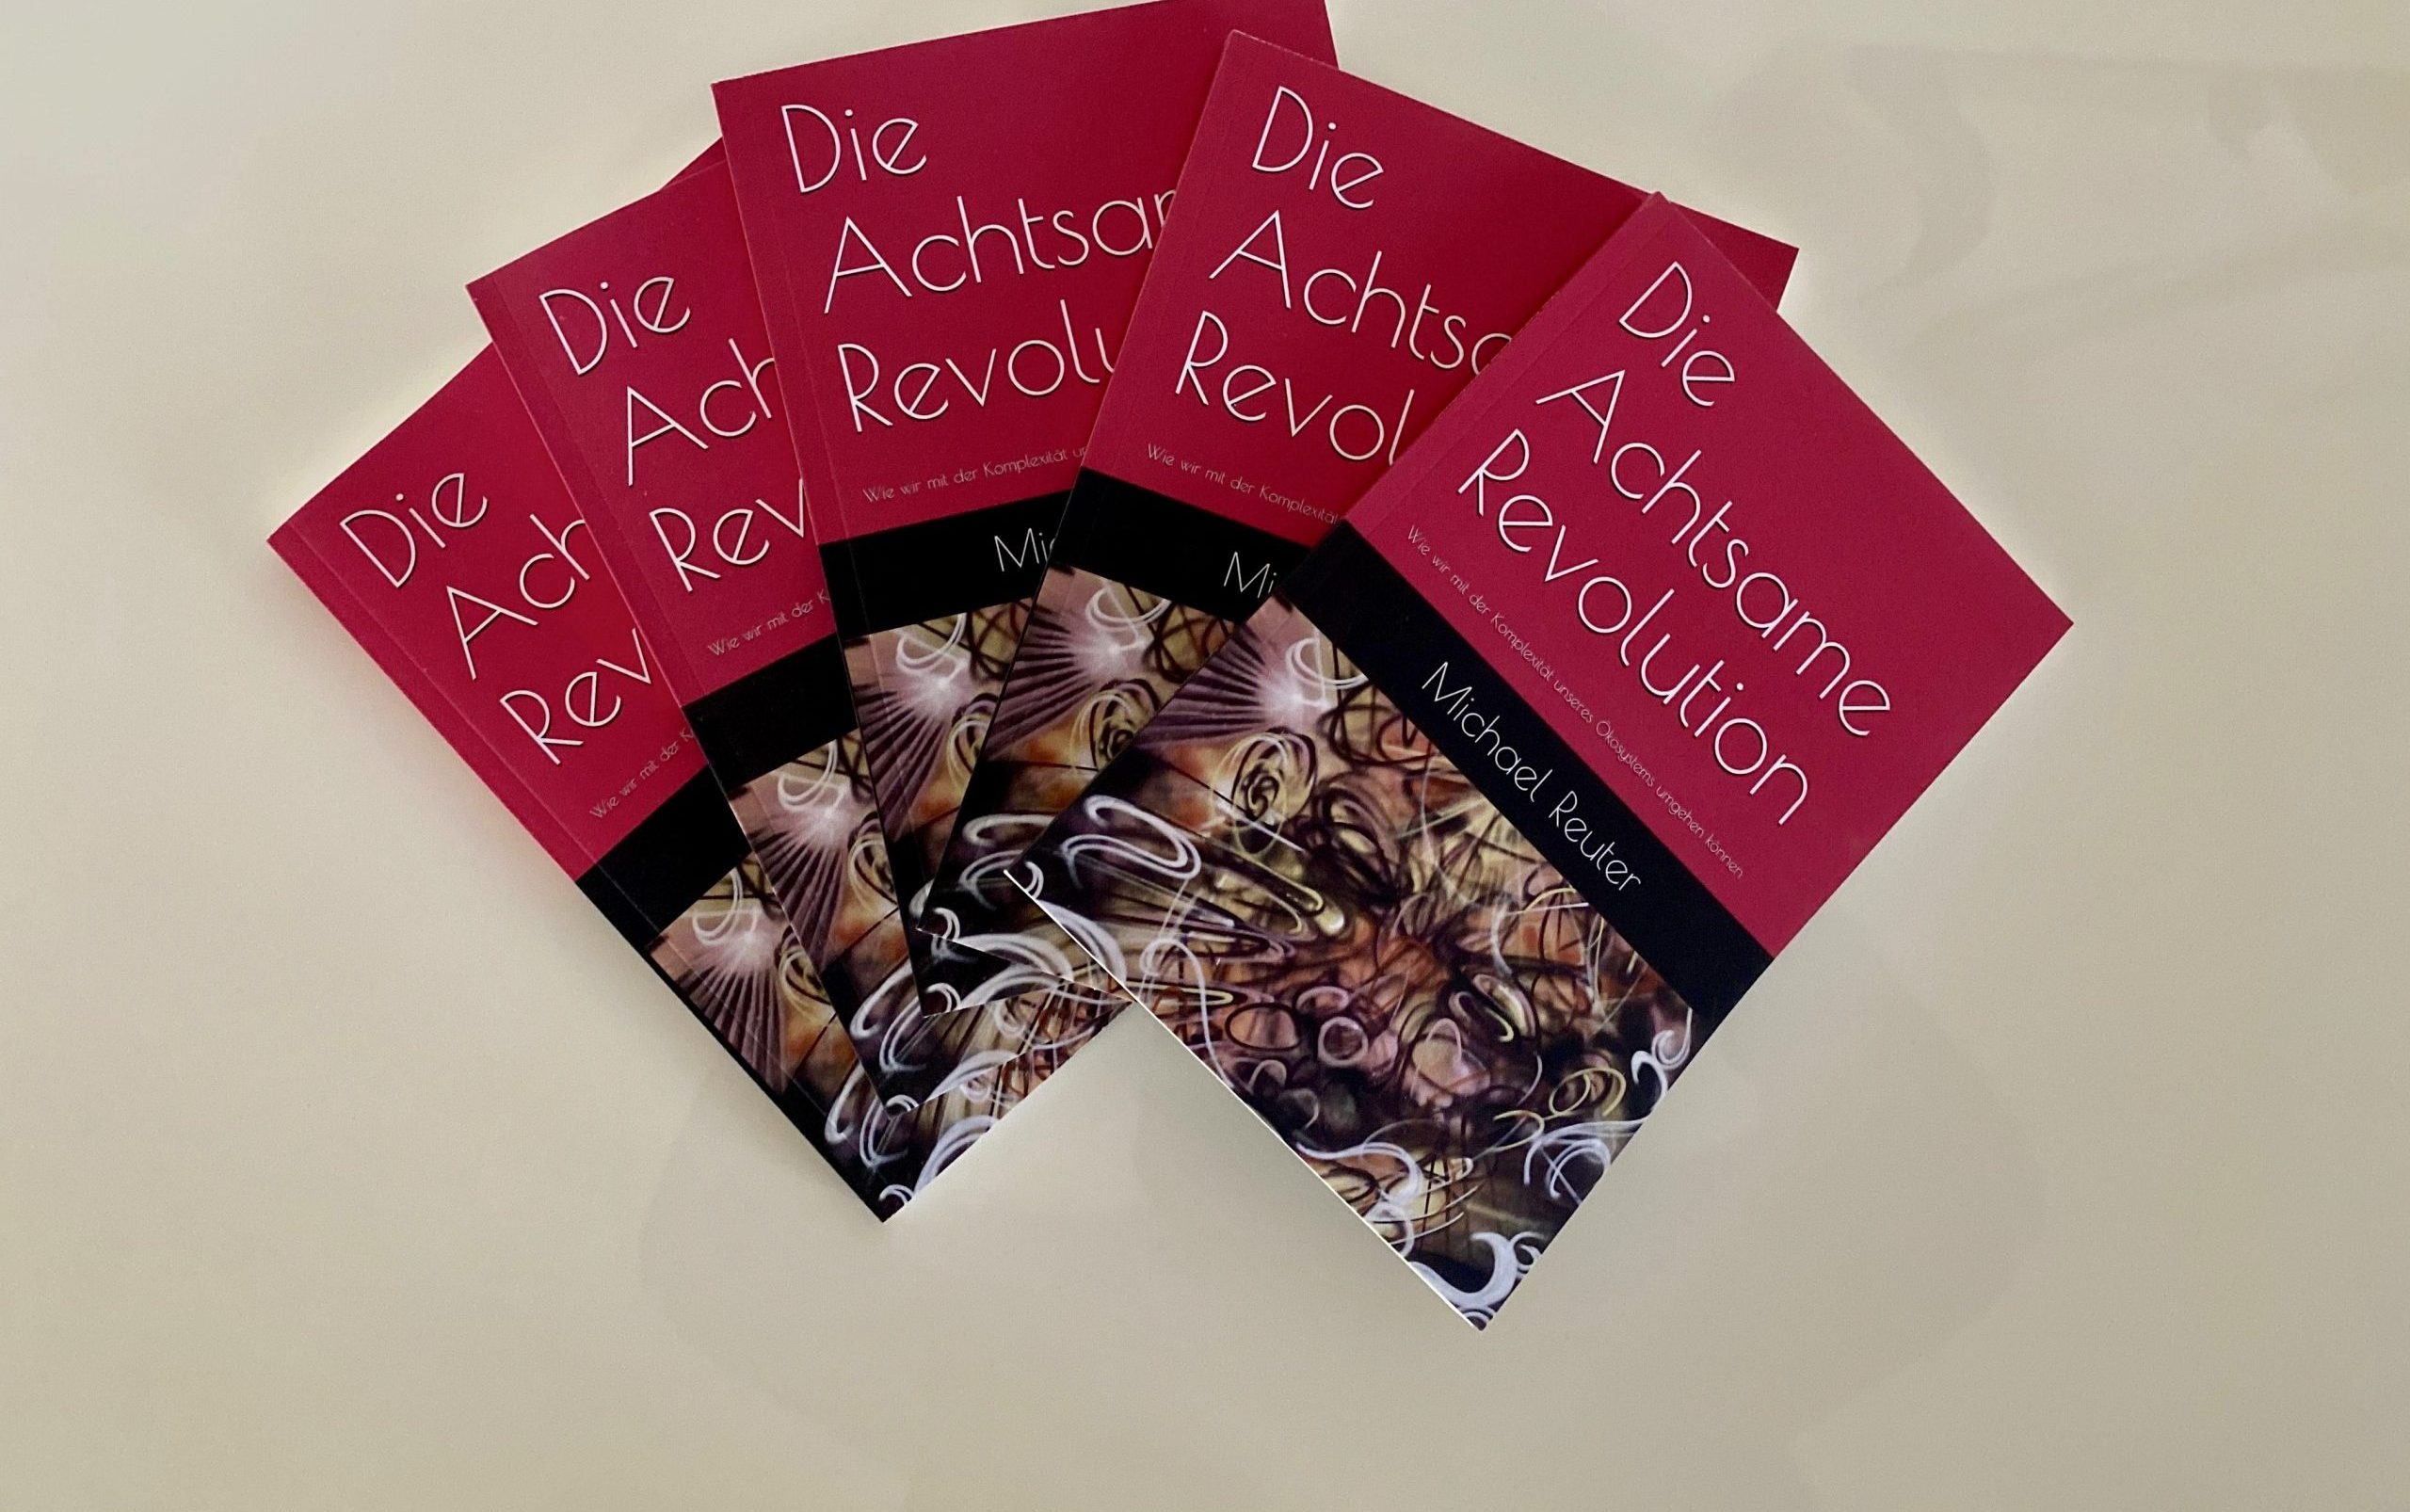 Die Achtsame Revolution – Deutsche Fassung von ‘The Mindful Revolution’ erschienen